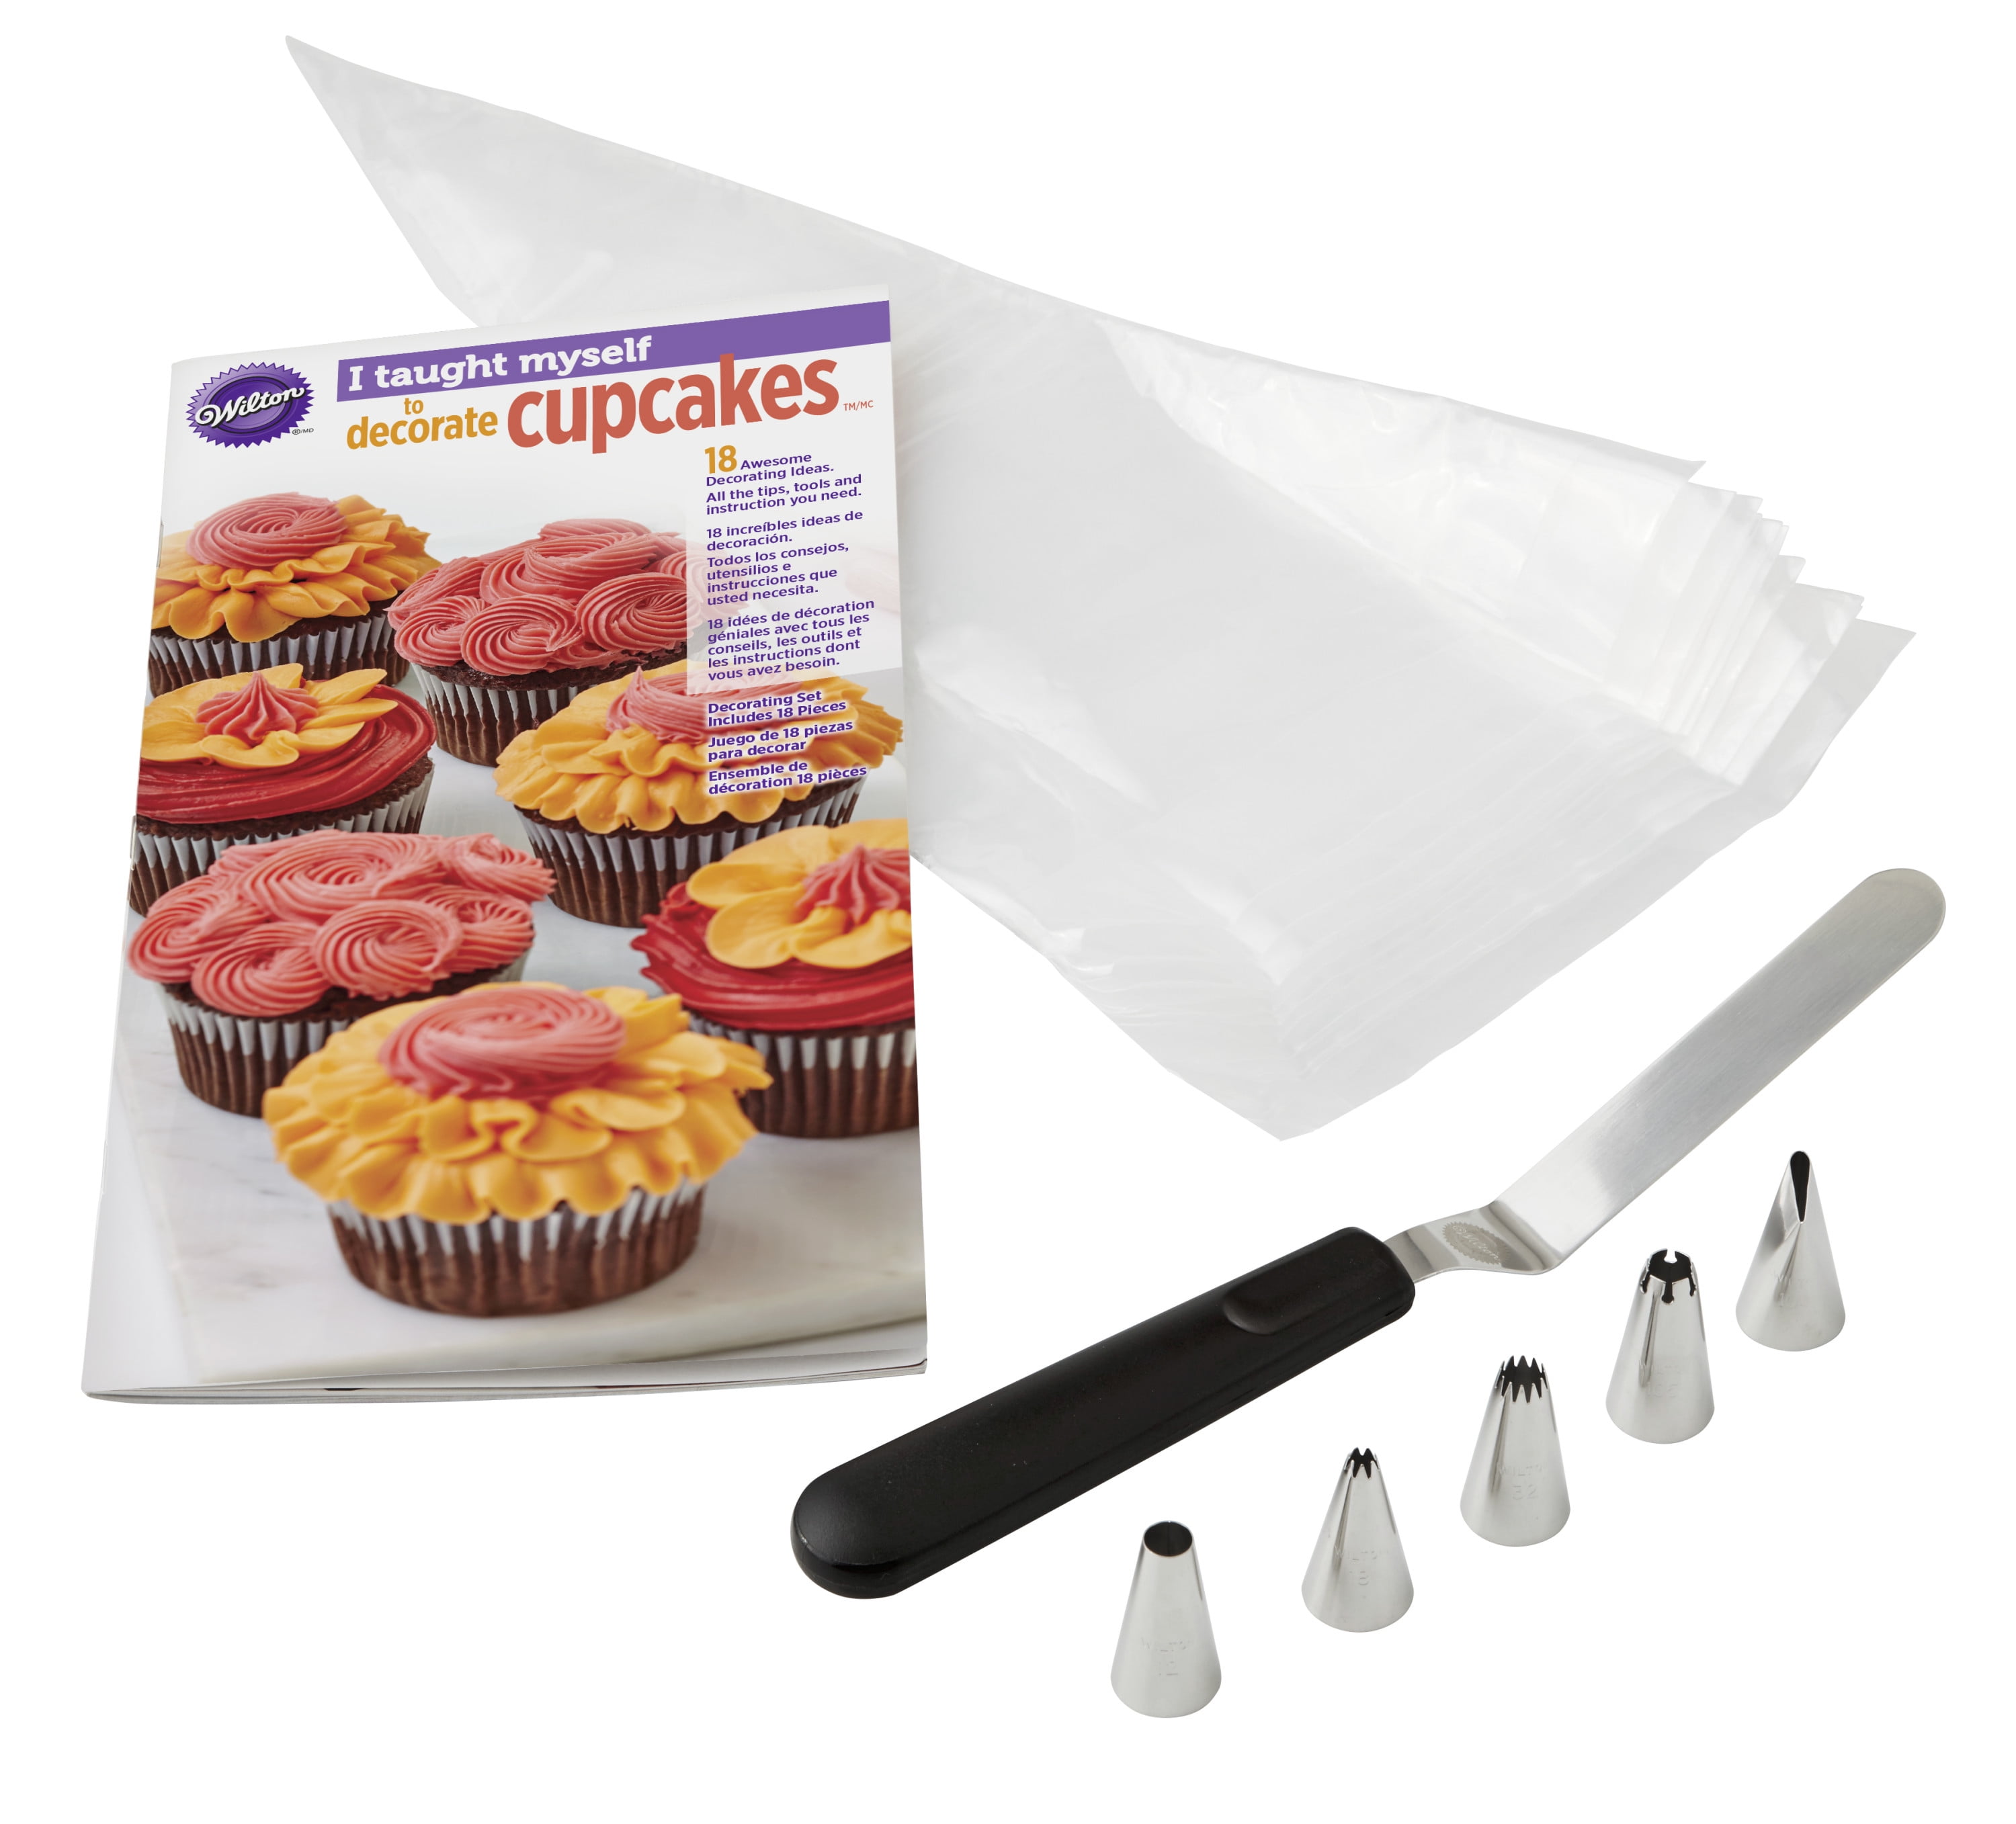 Cupcake Decorating DIY Kit — Cake Affection